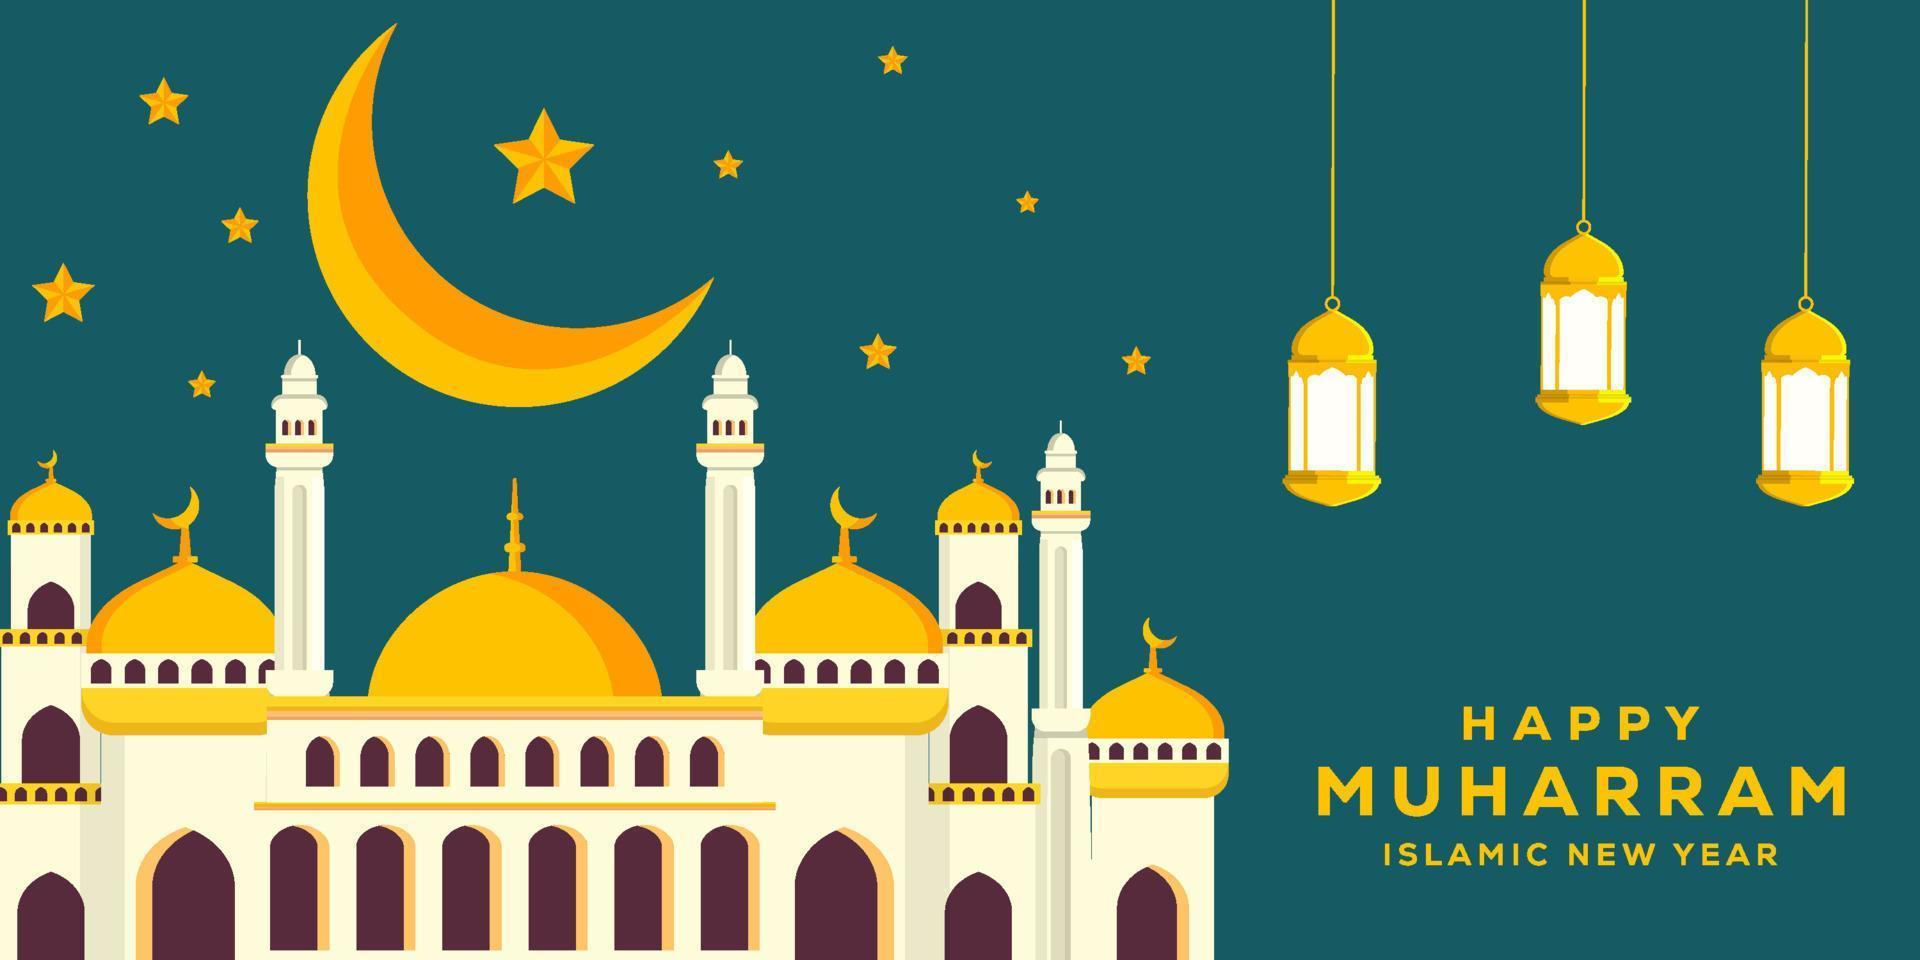 plano feliz muharram y año nuevo islámico ilustración de fondo con mezquita, luna y estrellas vector